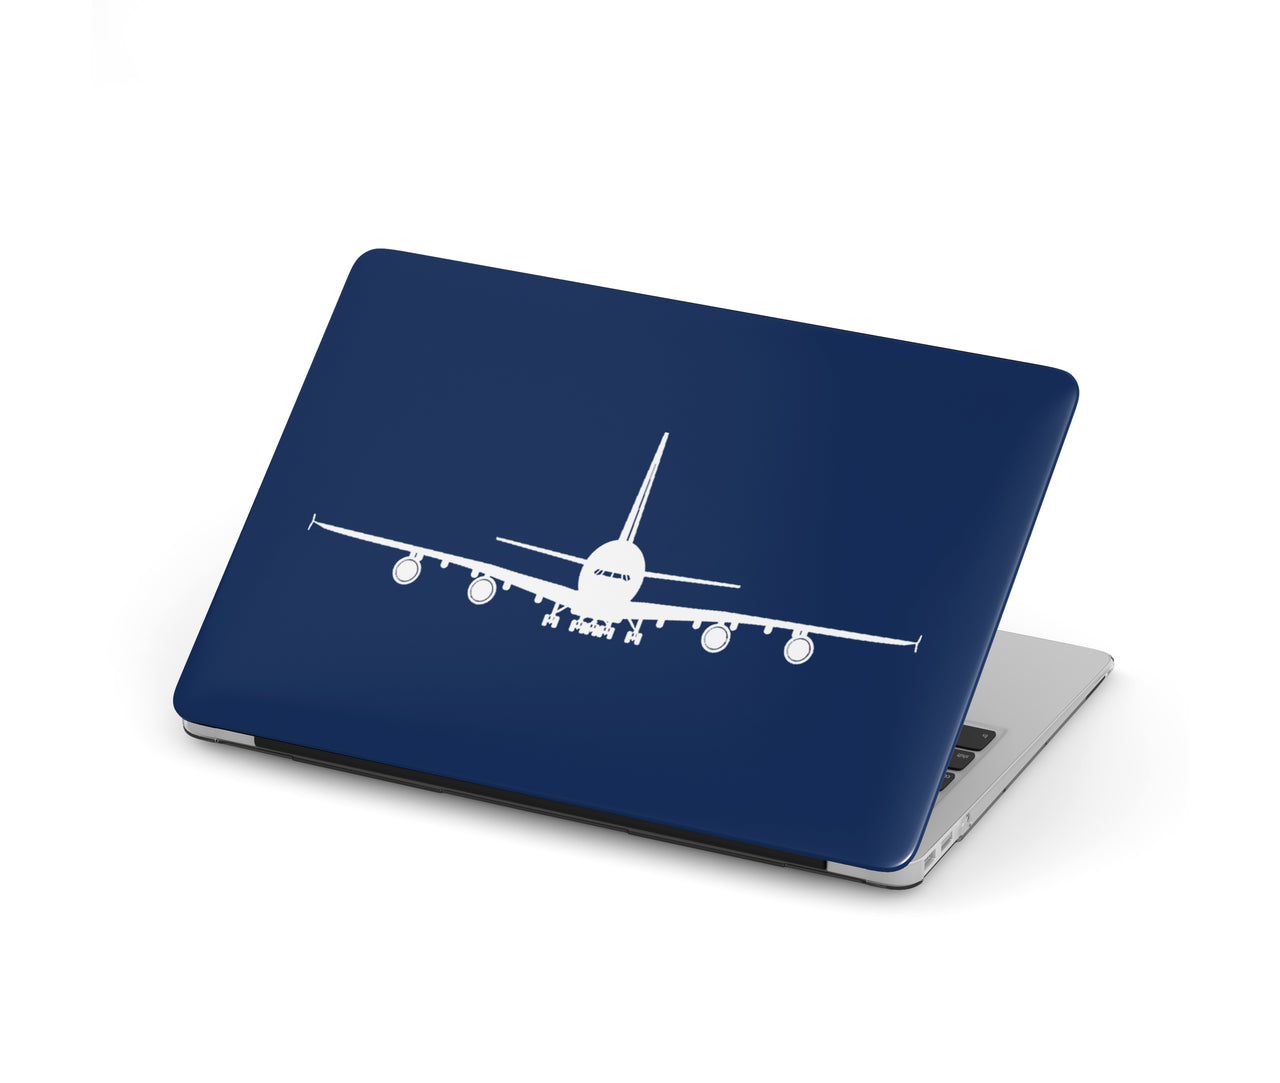 Airbus A380 Silhouette Designed Macbook Cases